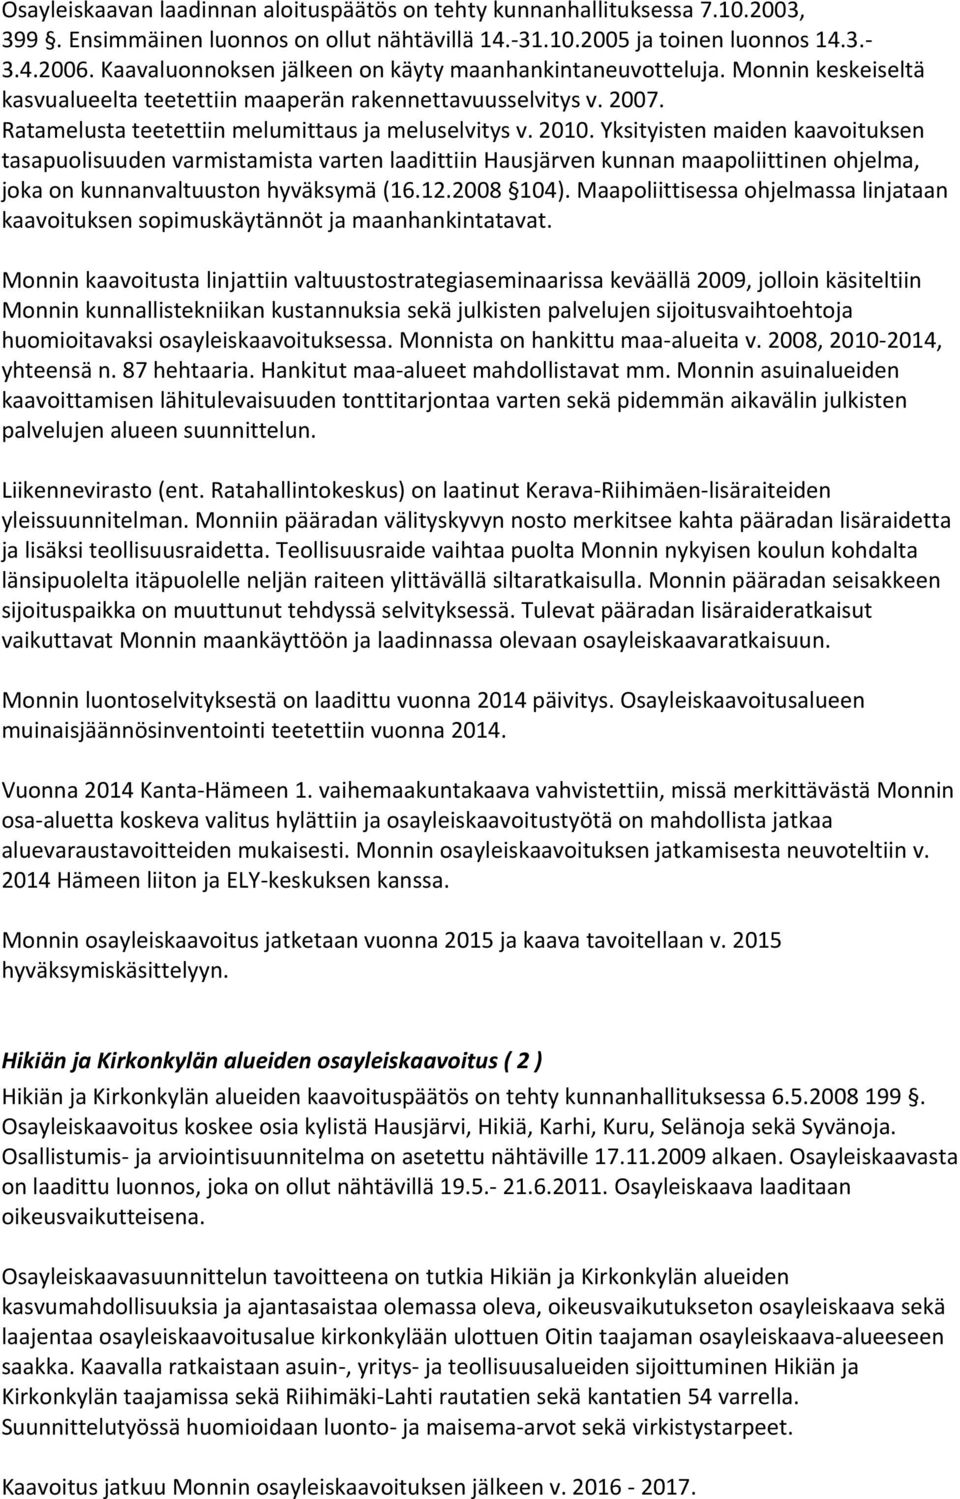 2010. Yksityisten maiden kaavoituksen tasapuolisuuden varmistamista varten laadittiin Hausjärven kunnan maapoliittinen ohjelma, joka on kunnanvaltuuston hyväksymä (16.12.2008 104).